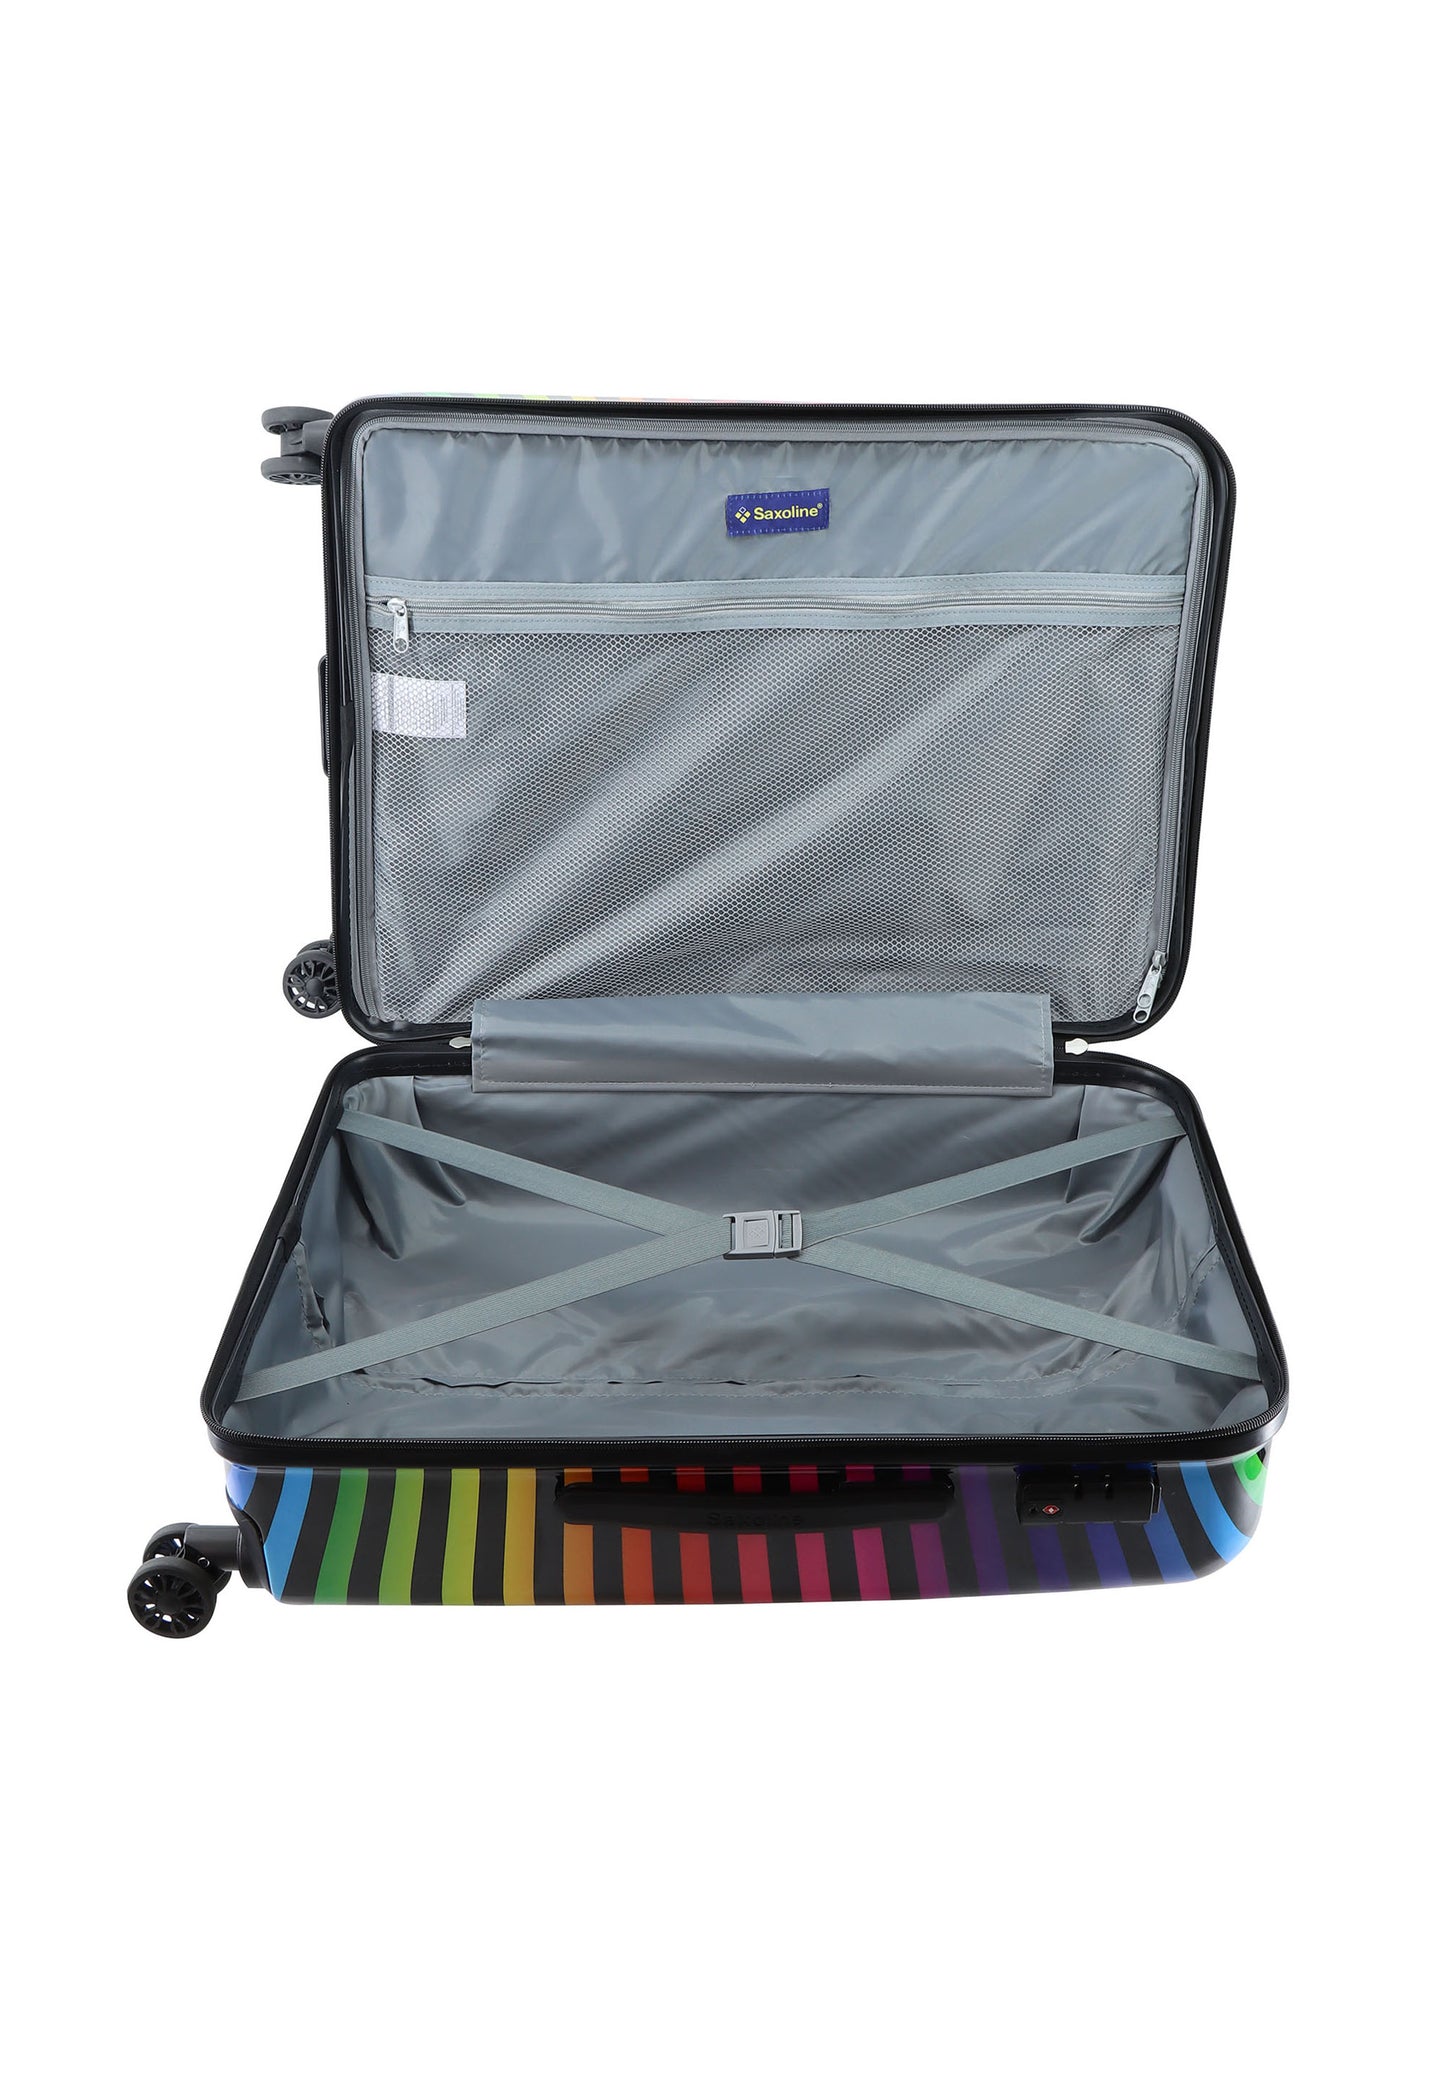 Saxoline Hard Case / Trolley / Travel Case - 64 cm (Moyen) - Impression de bande de couleur